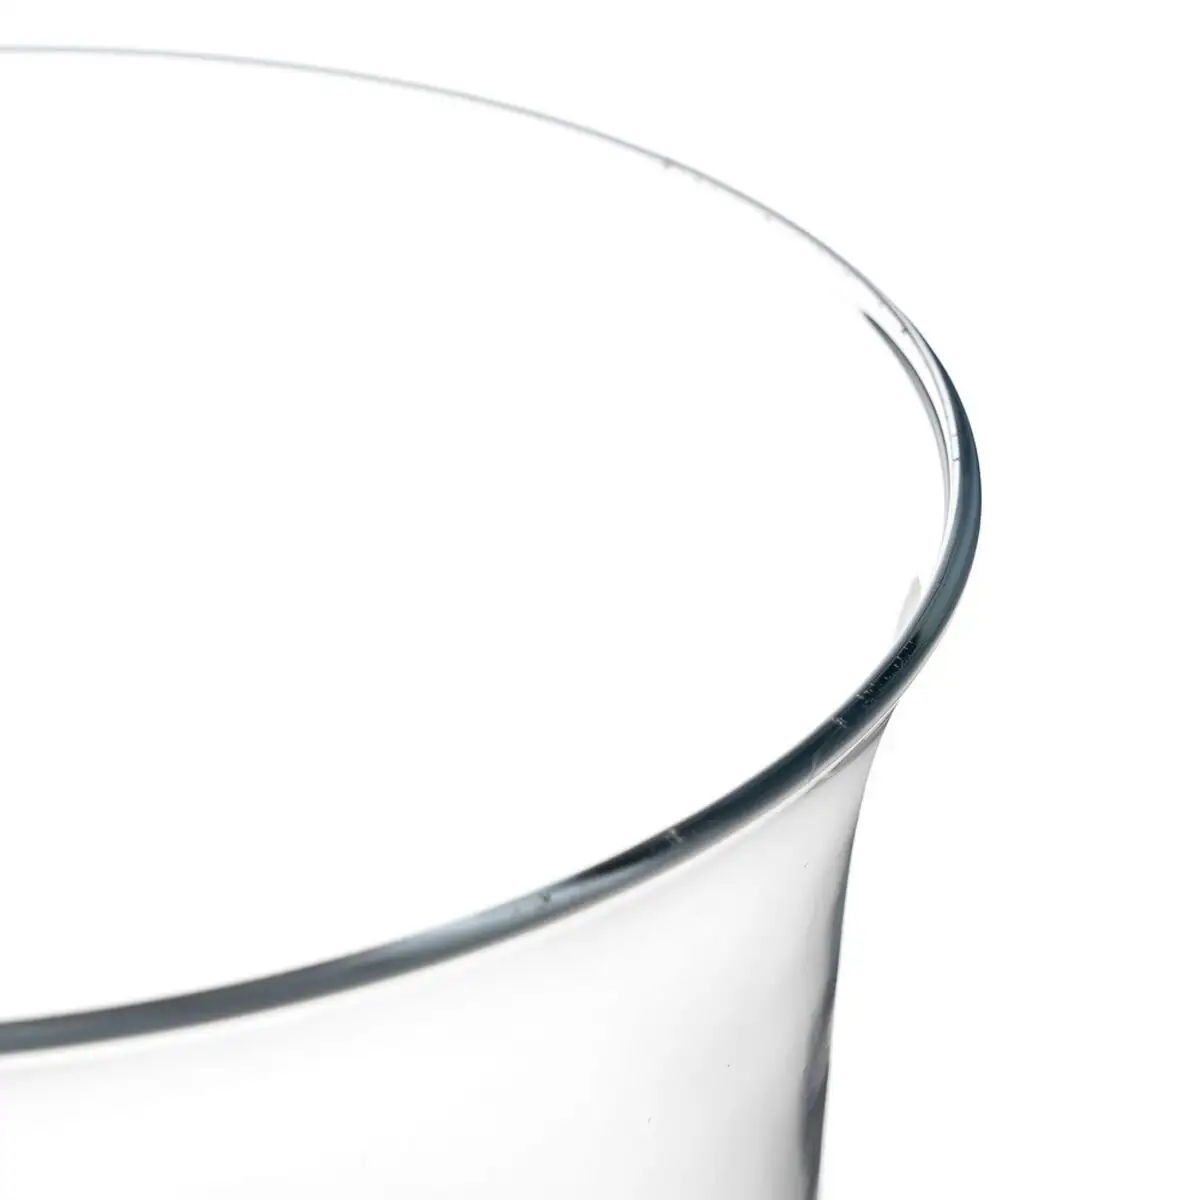 Vase cristal transparent 22 x 22 x 28 cm_6892. DIAYTAR SENEGAL - L'Art de Vivre avec Authenticité. Explorez notre gamme de produits artisanaux et découvrez des articles qui apportent une touche unique à votre vie.